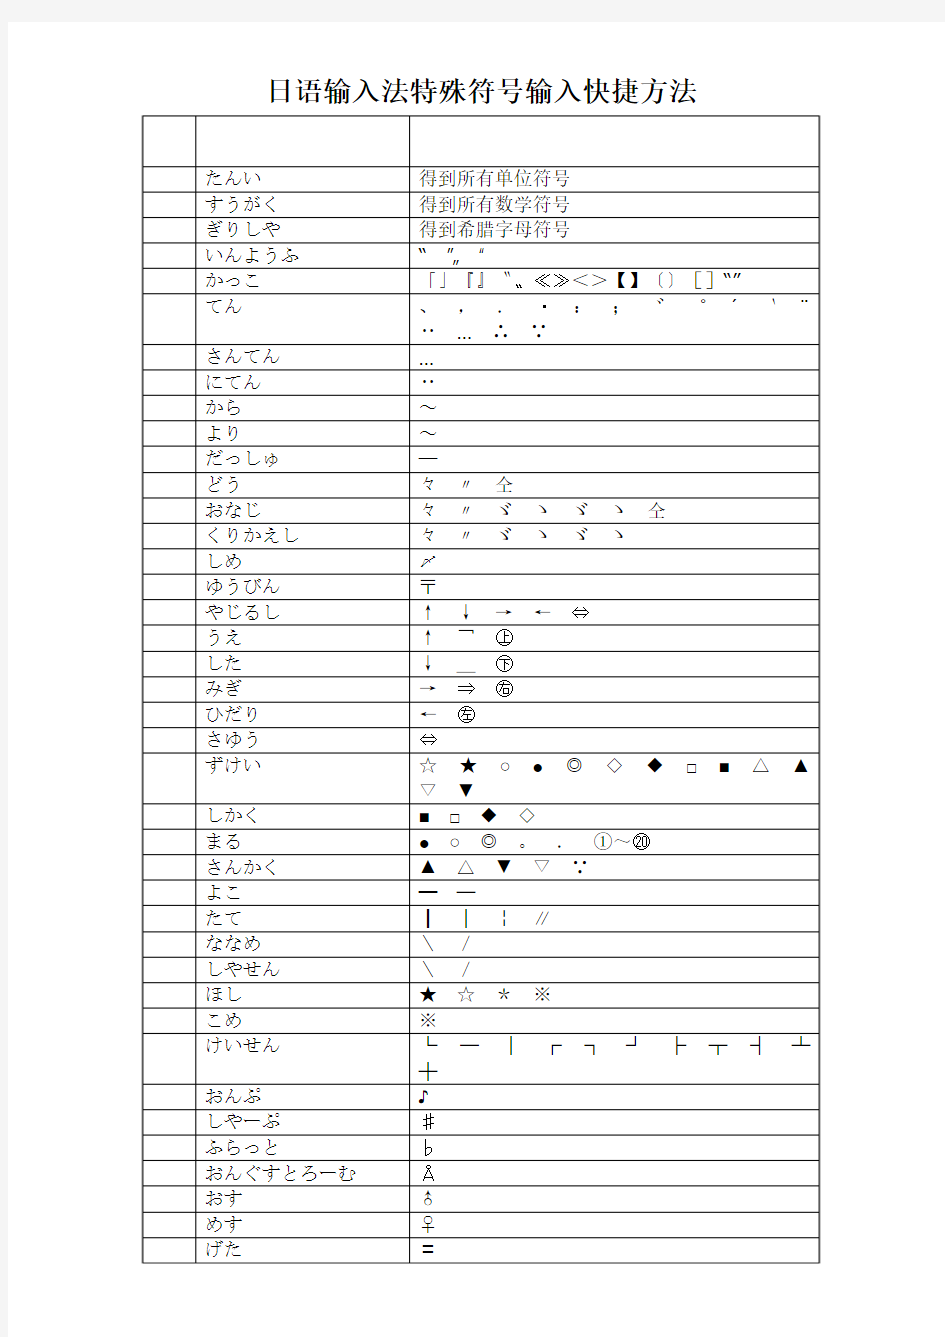 日语输入法特殊符号输入快捷方法